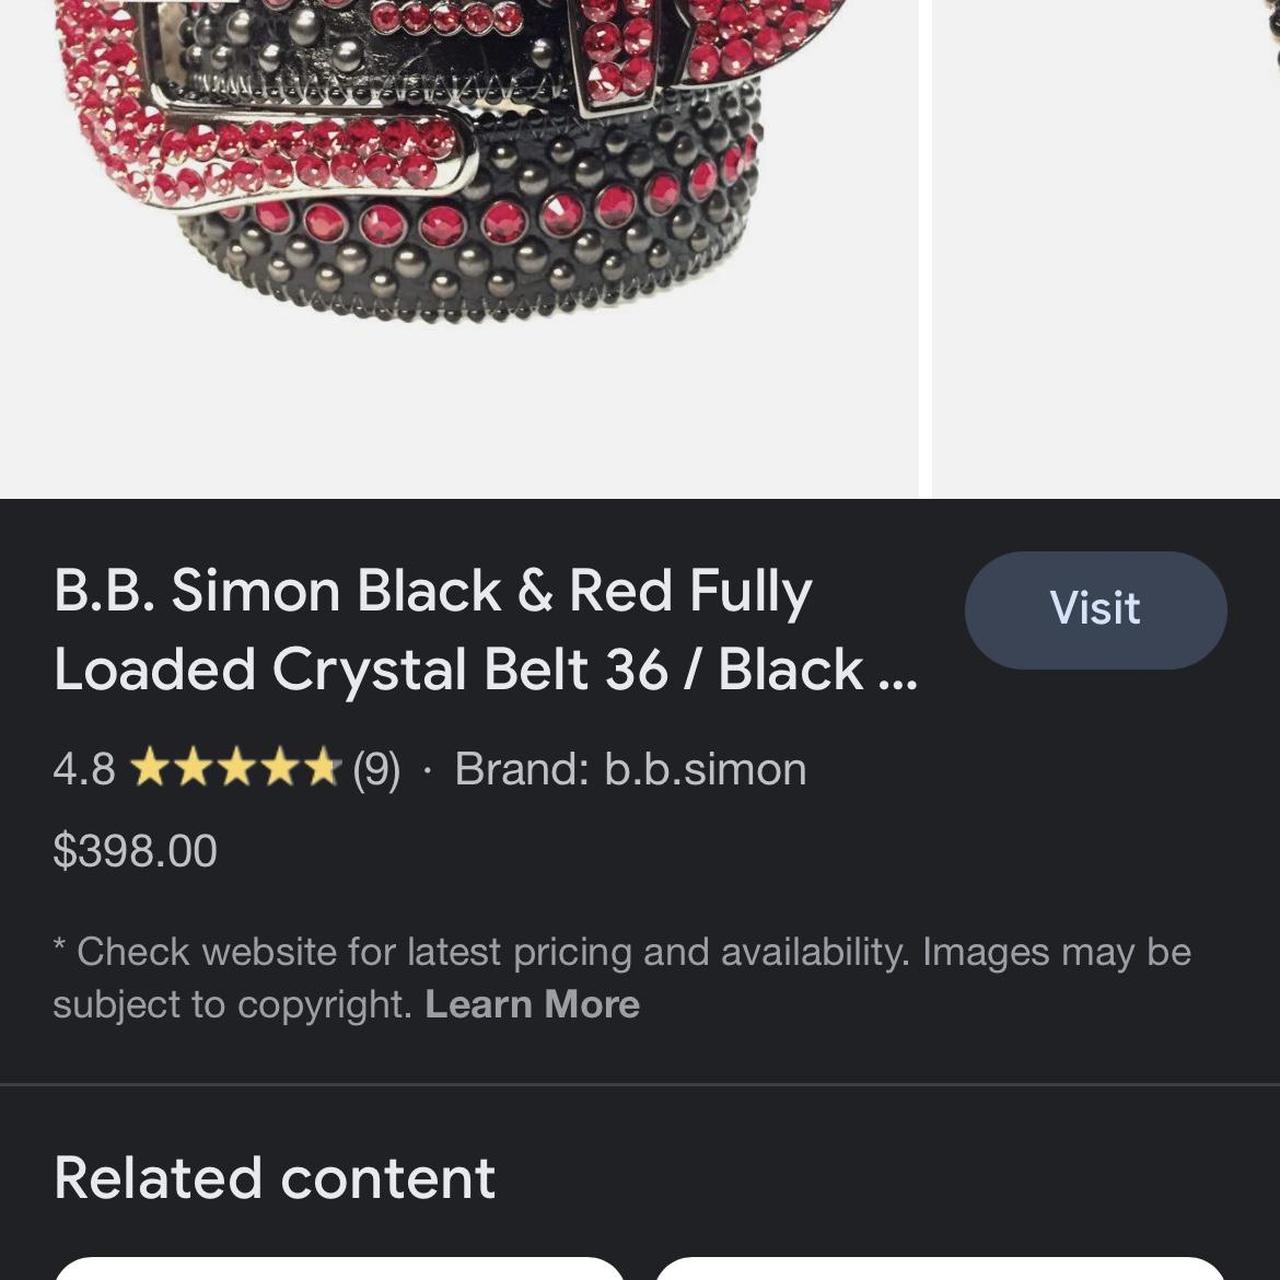 B.B. Simon Black & Red Fully Loaded Crystal Belt 36 / Black & Red